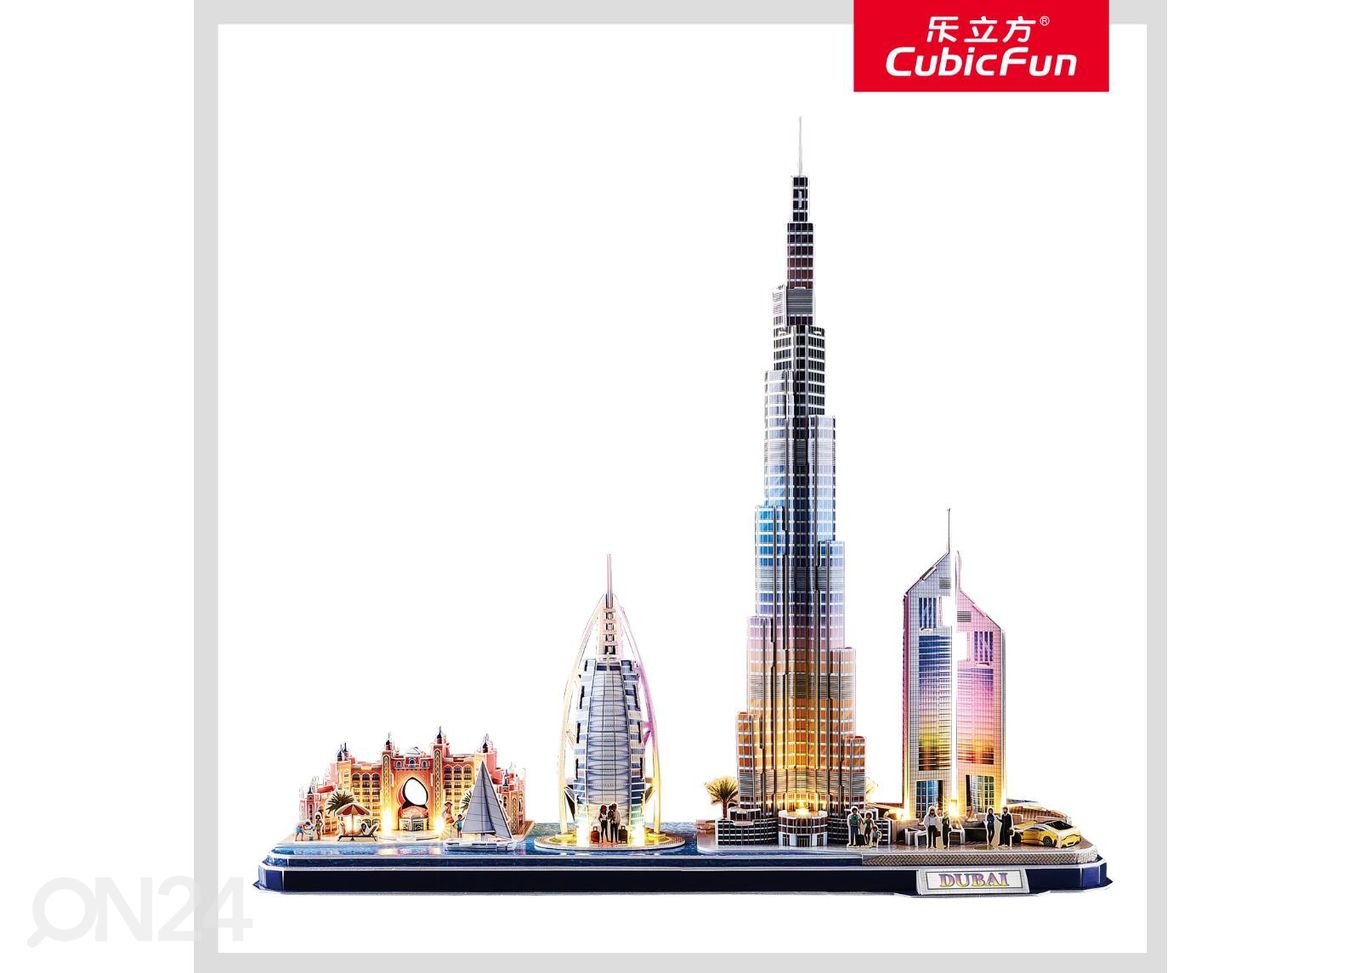 3D-пазл c LED-подсветкой Дубай CUBICFUN City Line увеличить